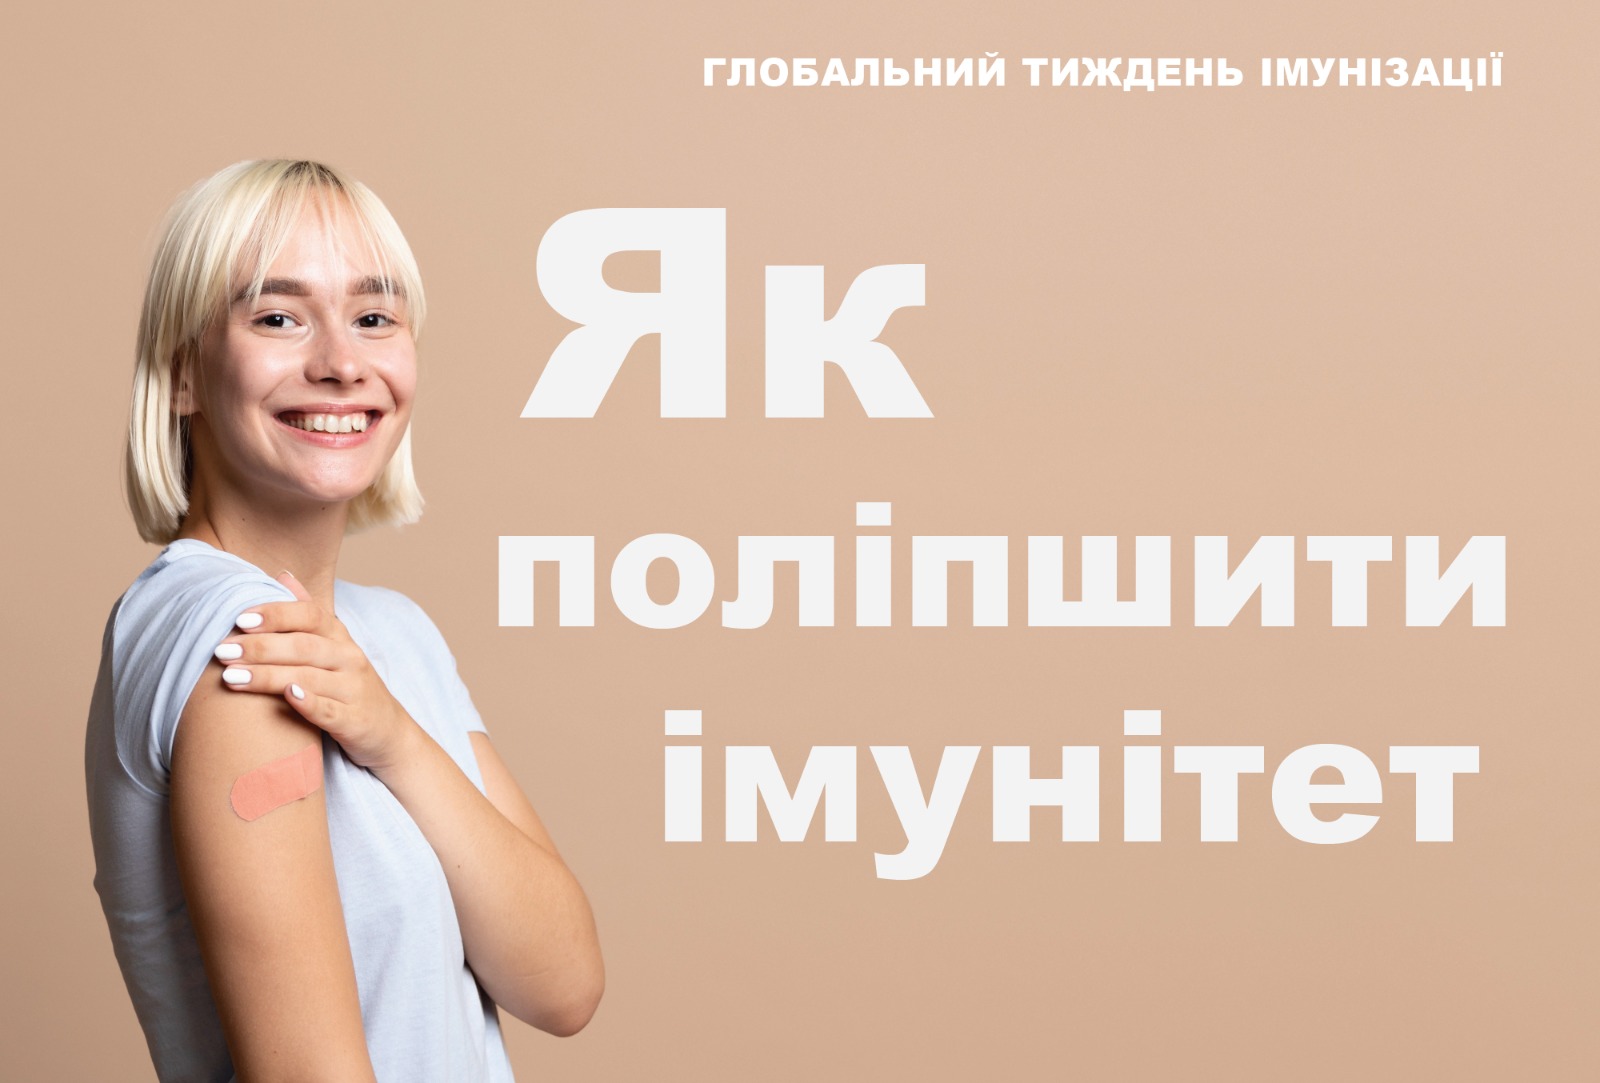 На зображенні усміхнена дівчина якій зробили щеплення в руку, праворуч підпис - Як поліпшити імунітет